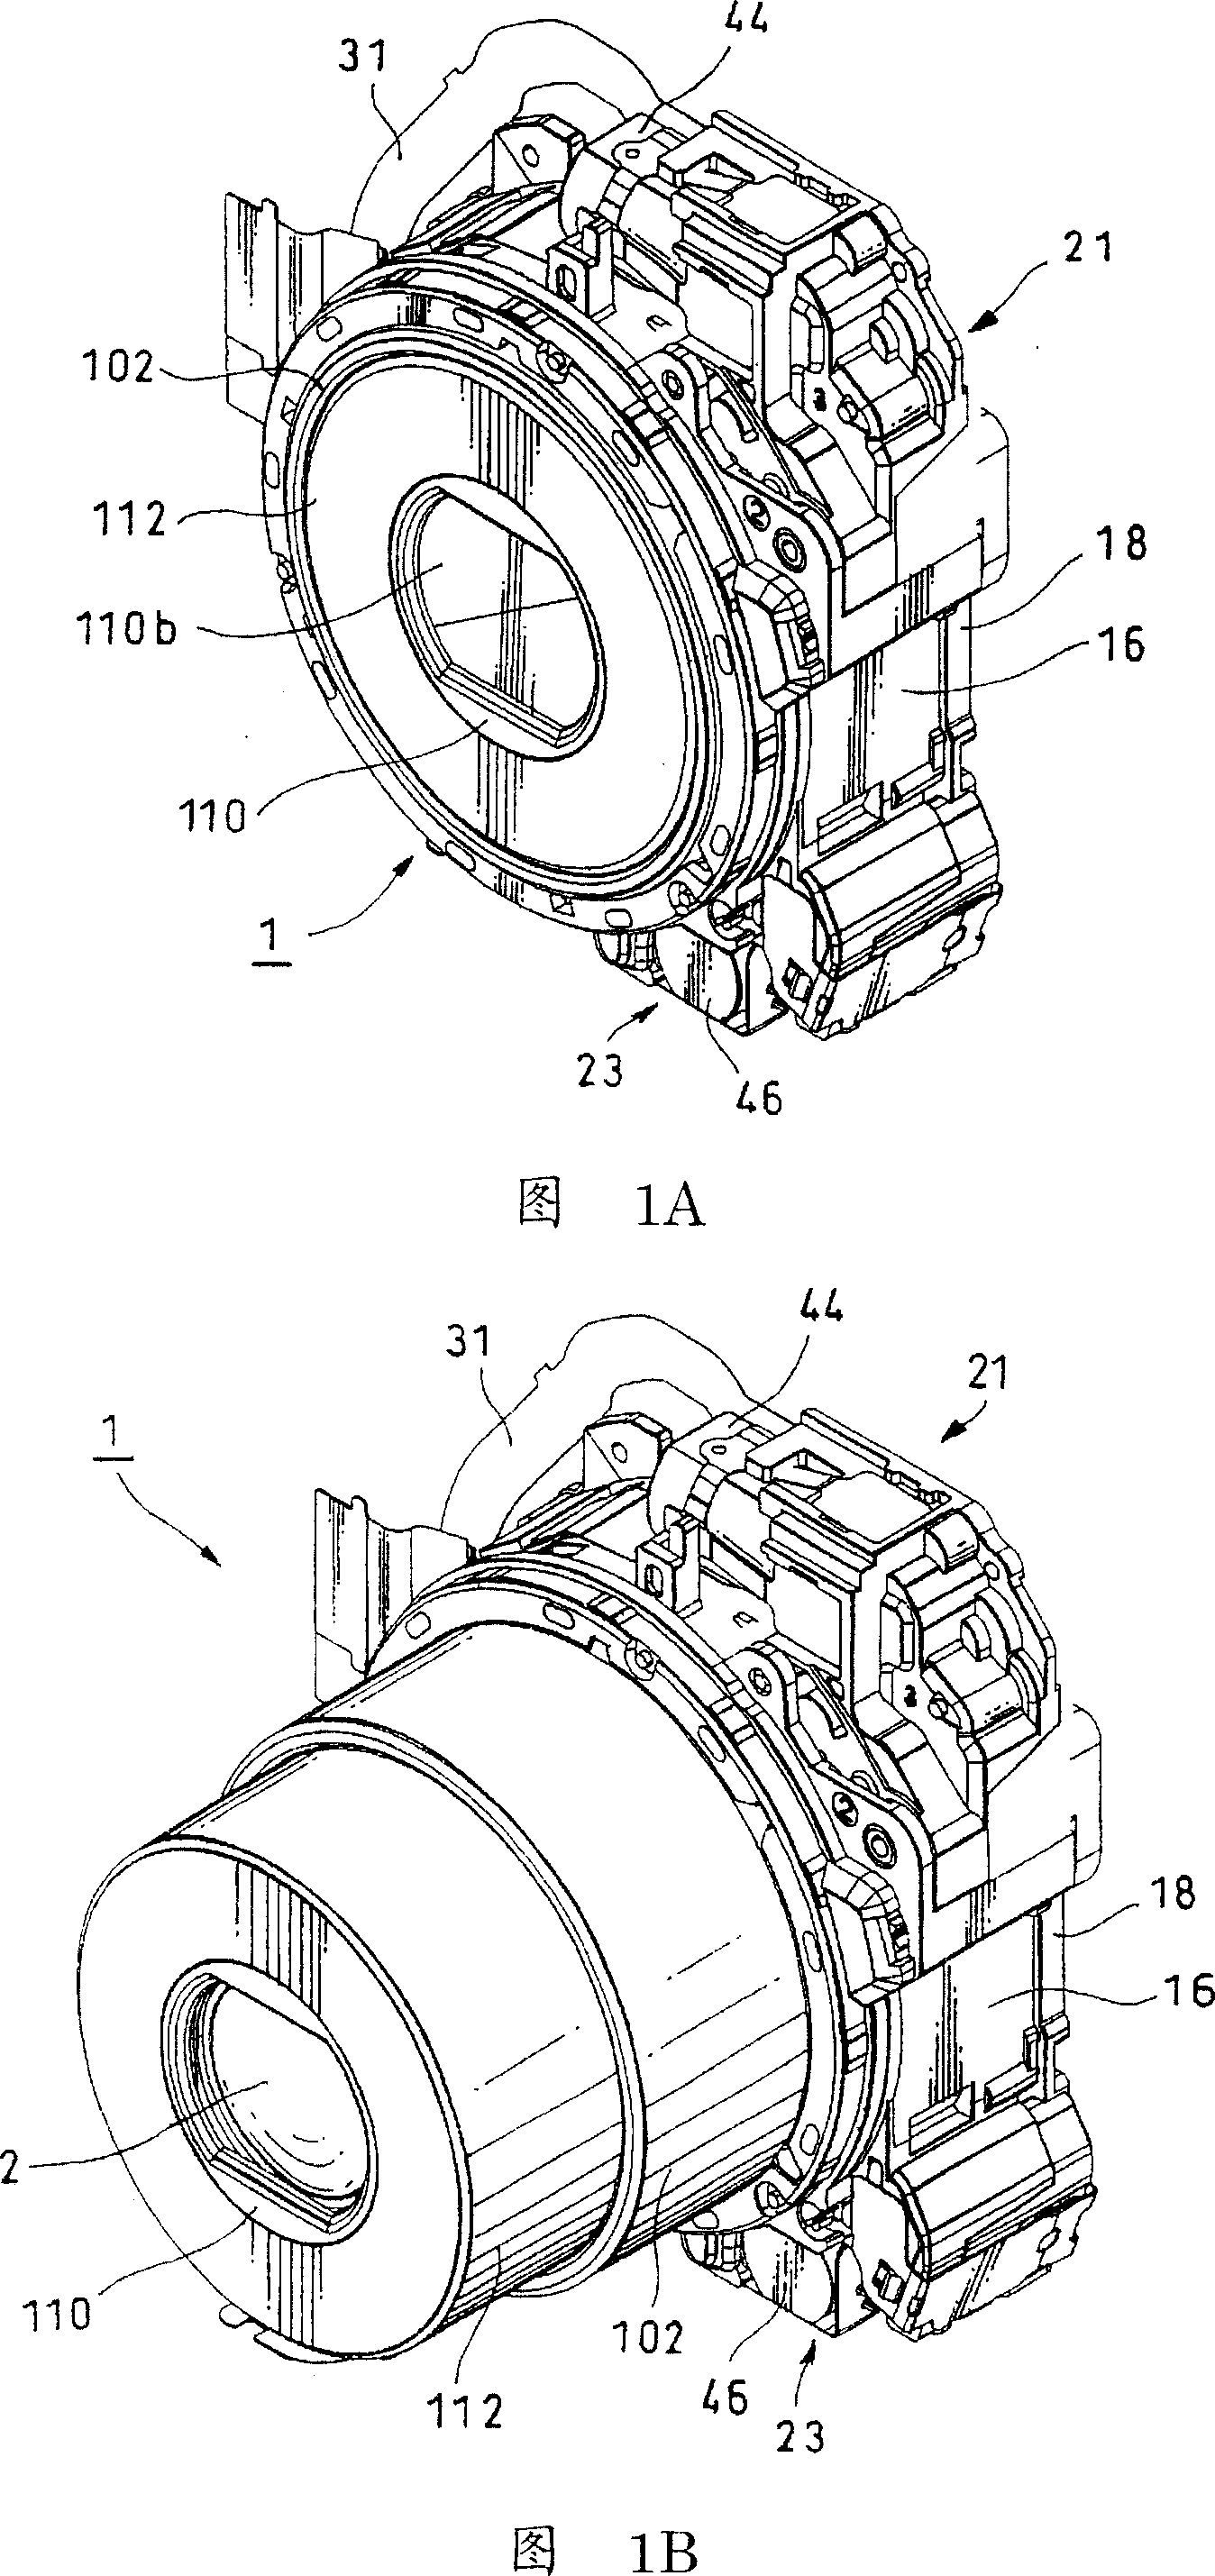 Lens barrel